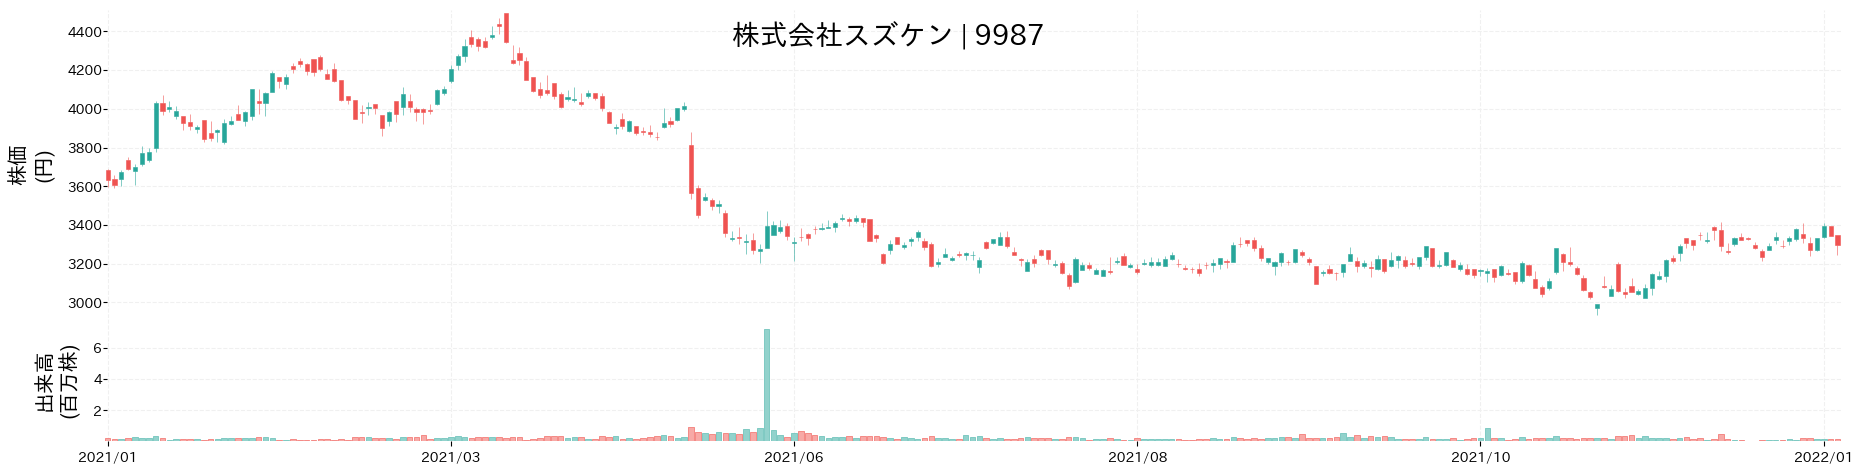 スズケンの株価推移(2021)